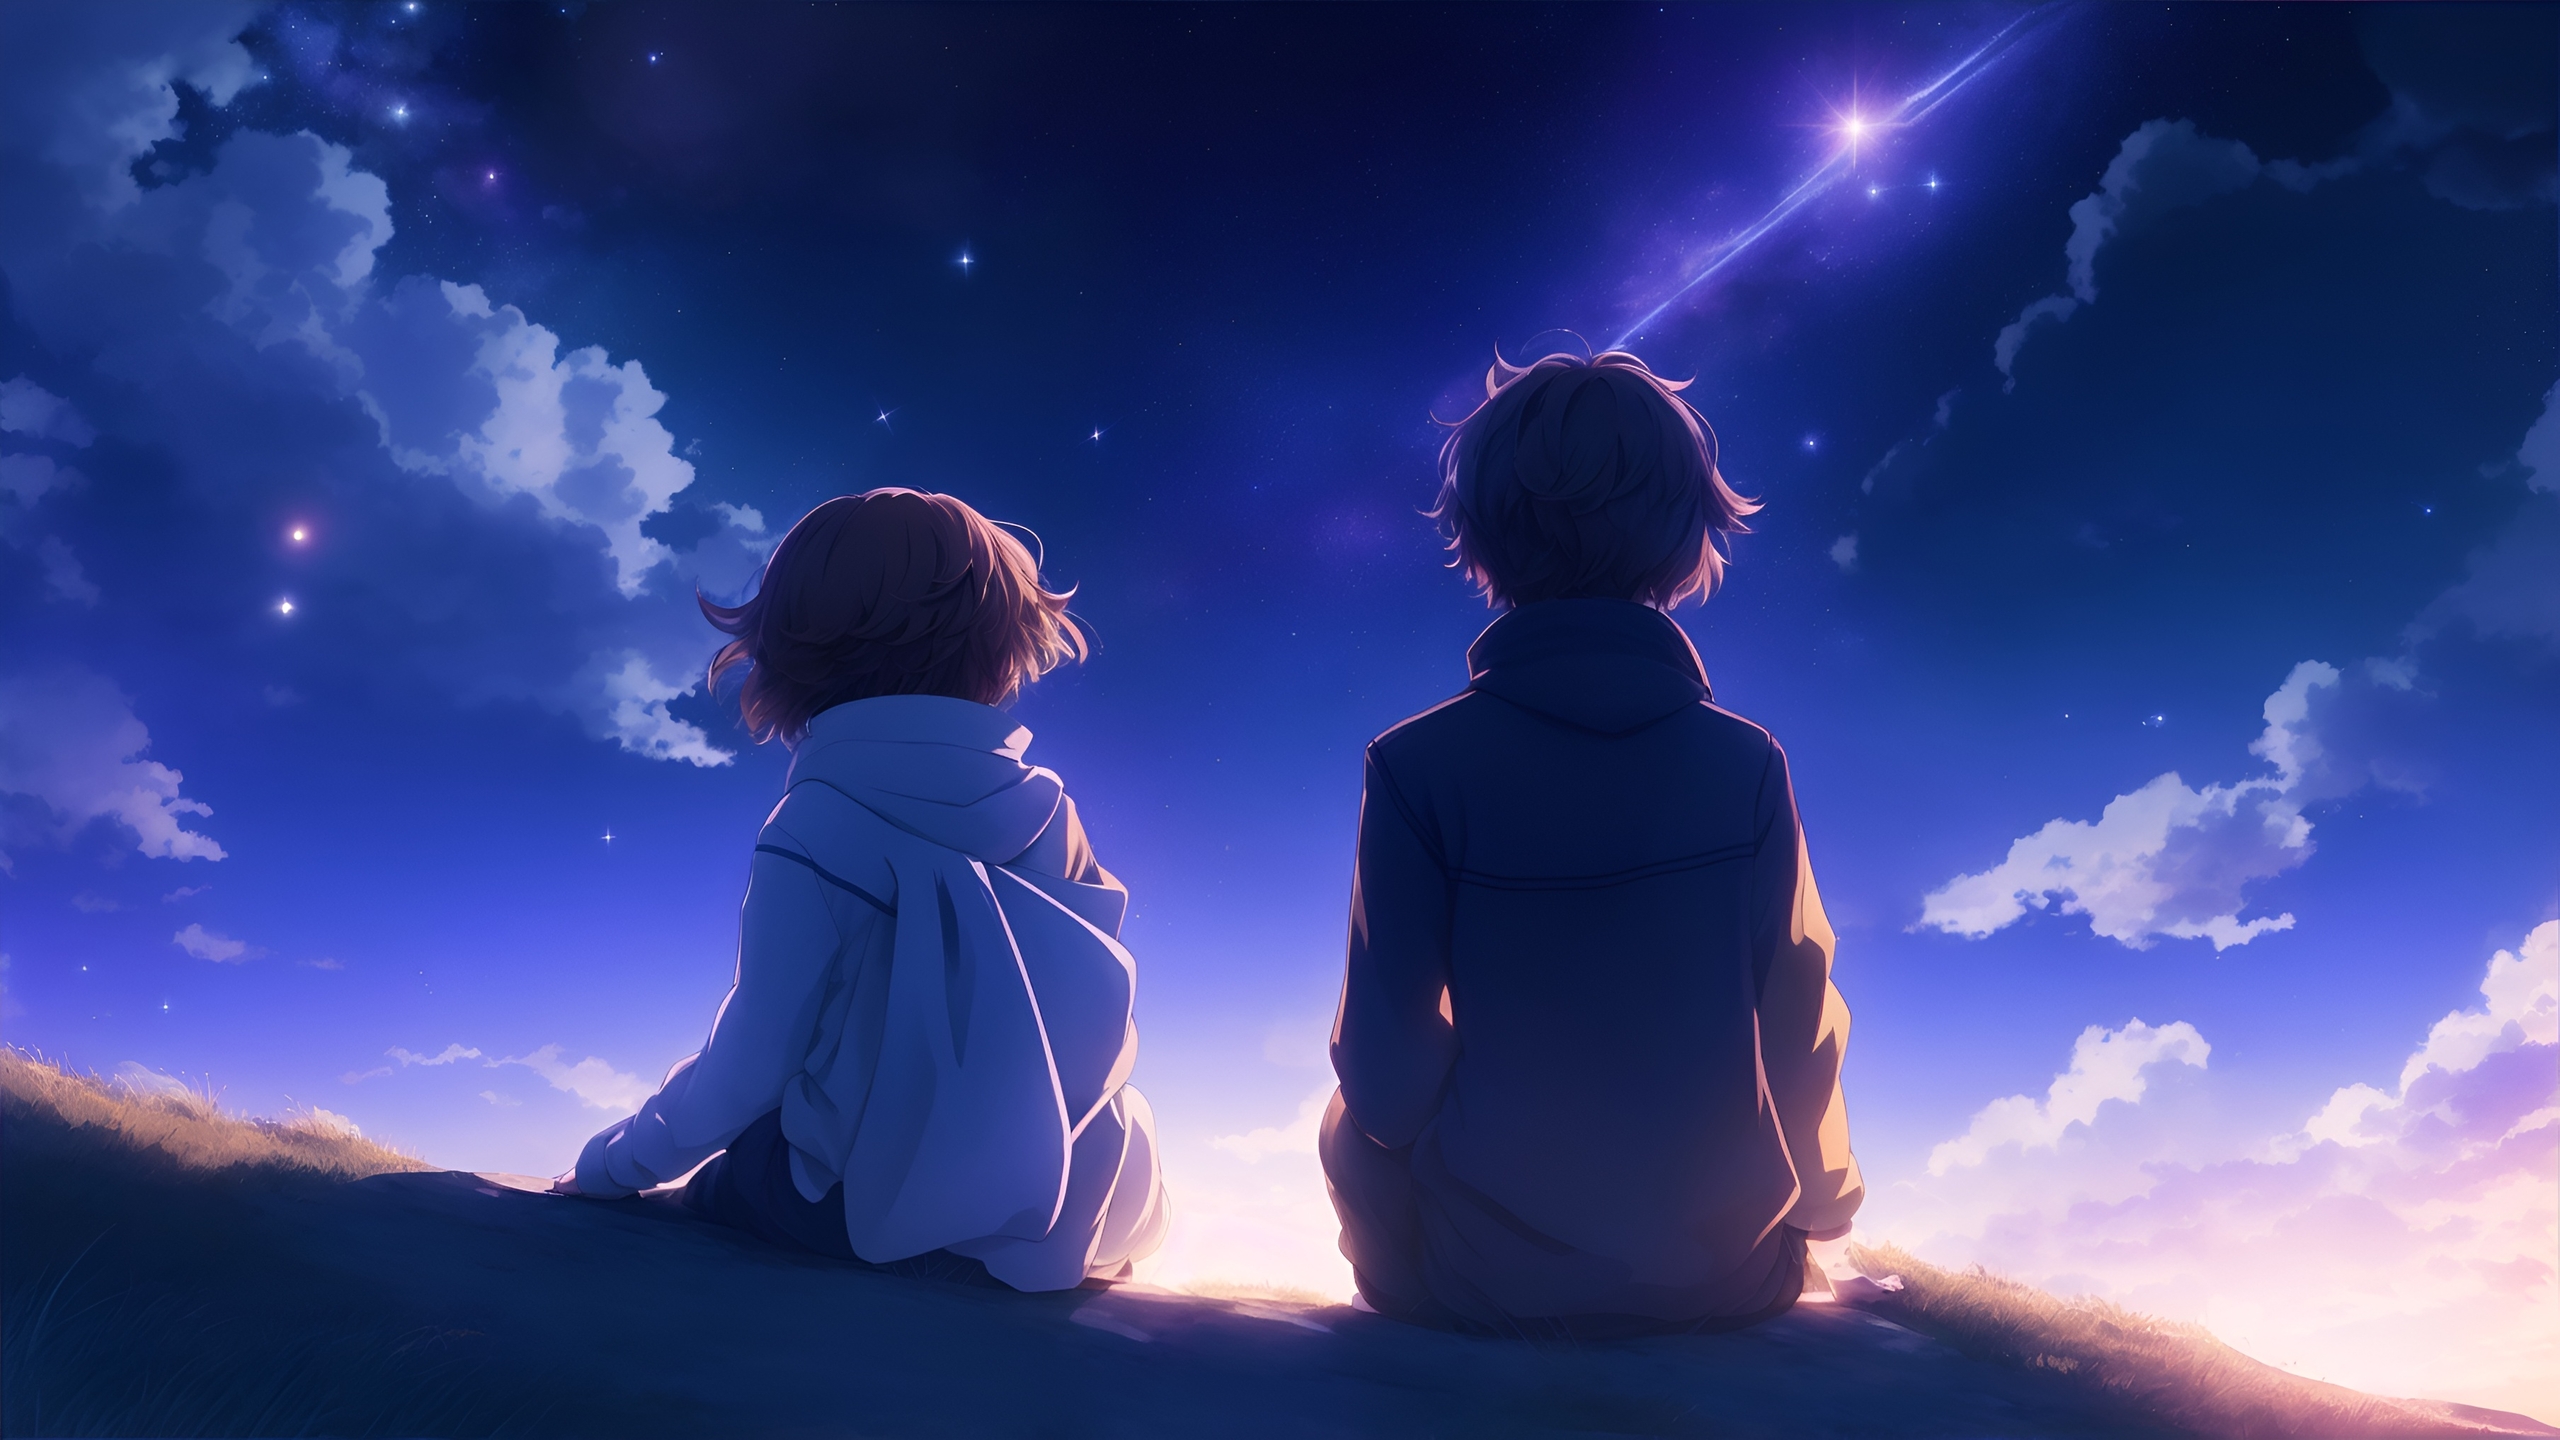 Wallpaper Anime Boy Anime Girl Couple Sky Clouds Stars Shooting Star Wallpaperhub 1277